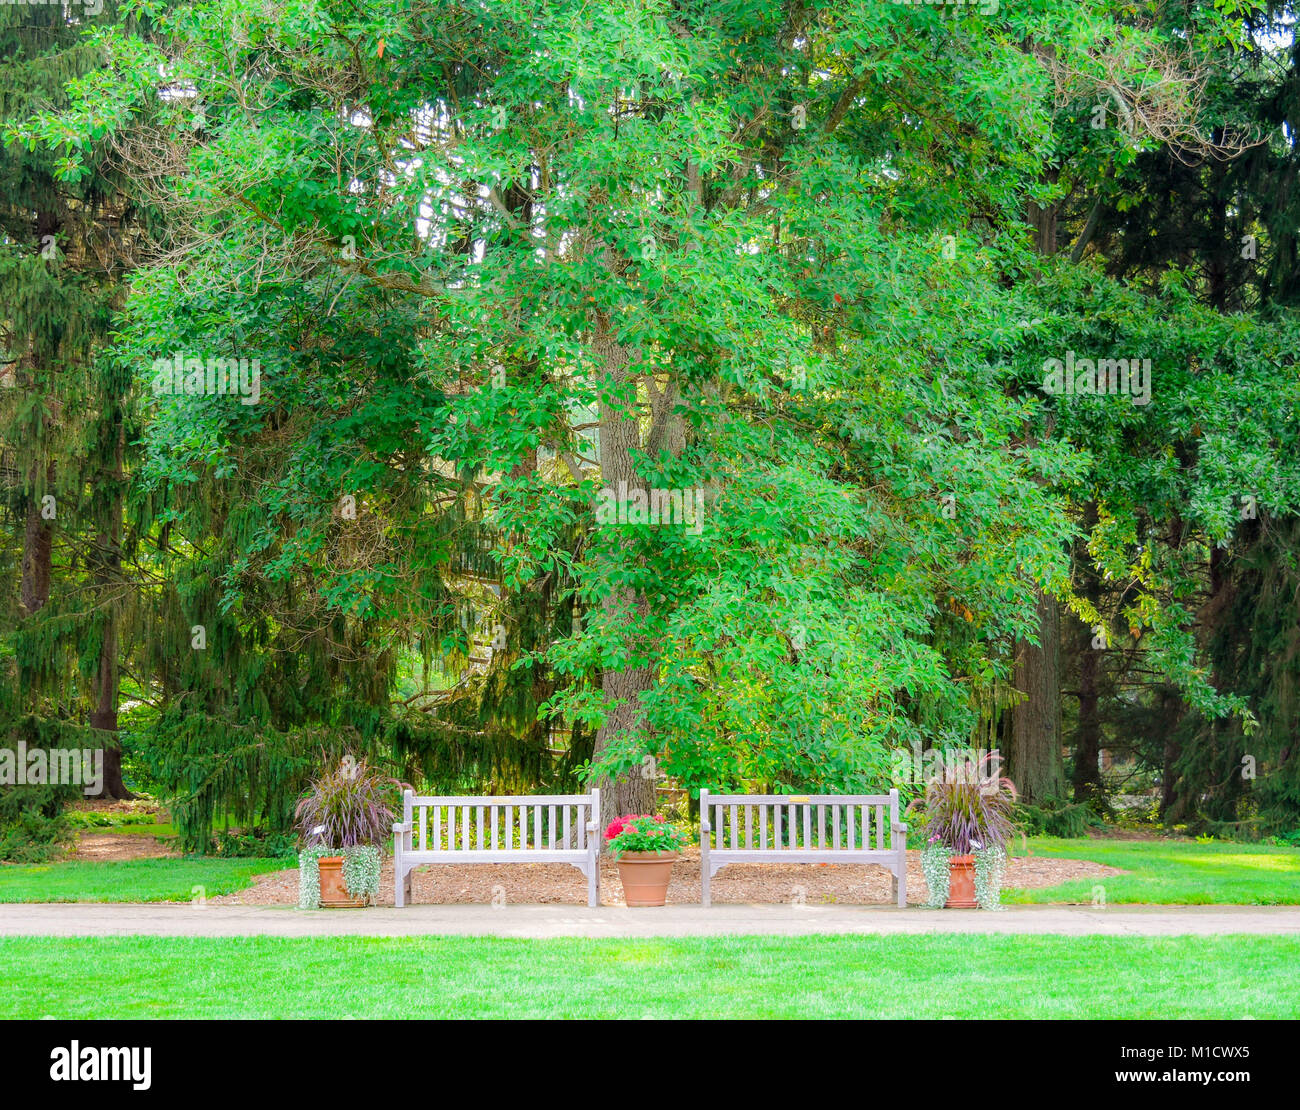 Deux bancs vides s'asseoir en face de parmi les arbres verdoyants et les conifères. Un sentier de randonnée passe les bancs comme le lieu idéal pour se reposer. Banque D'Images